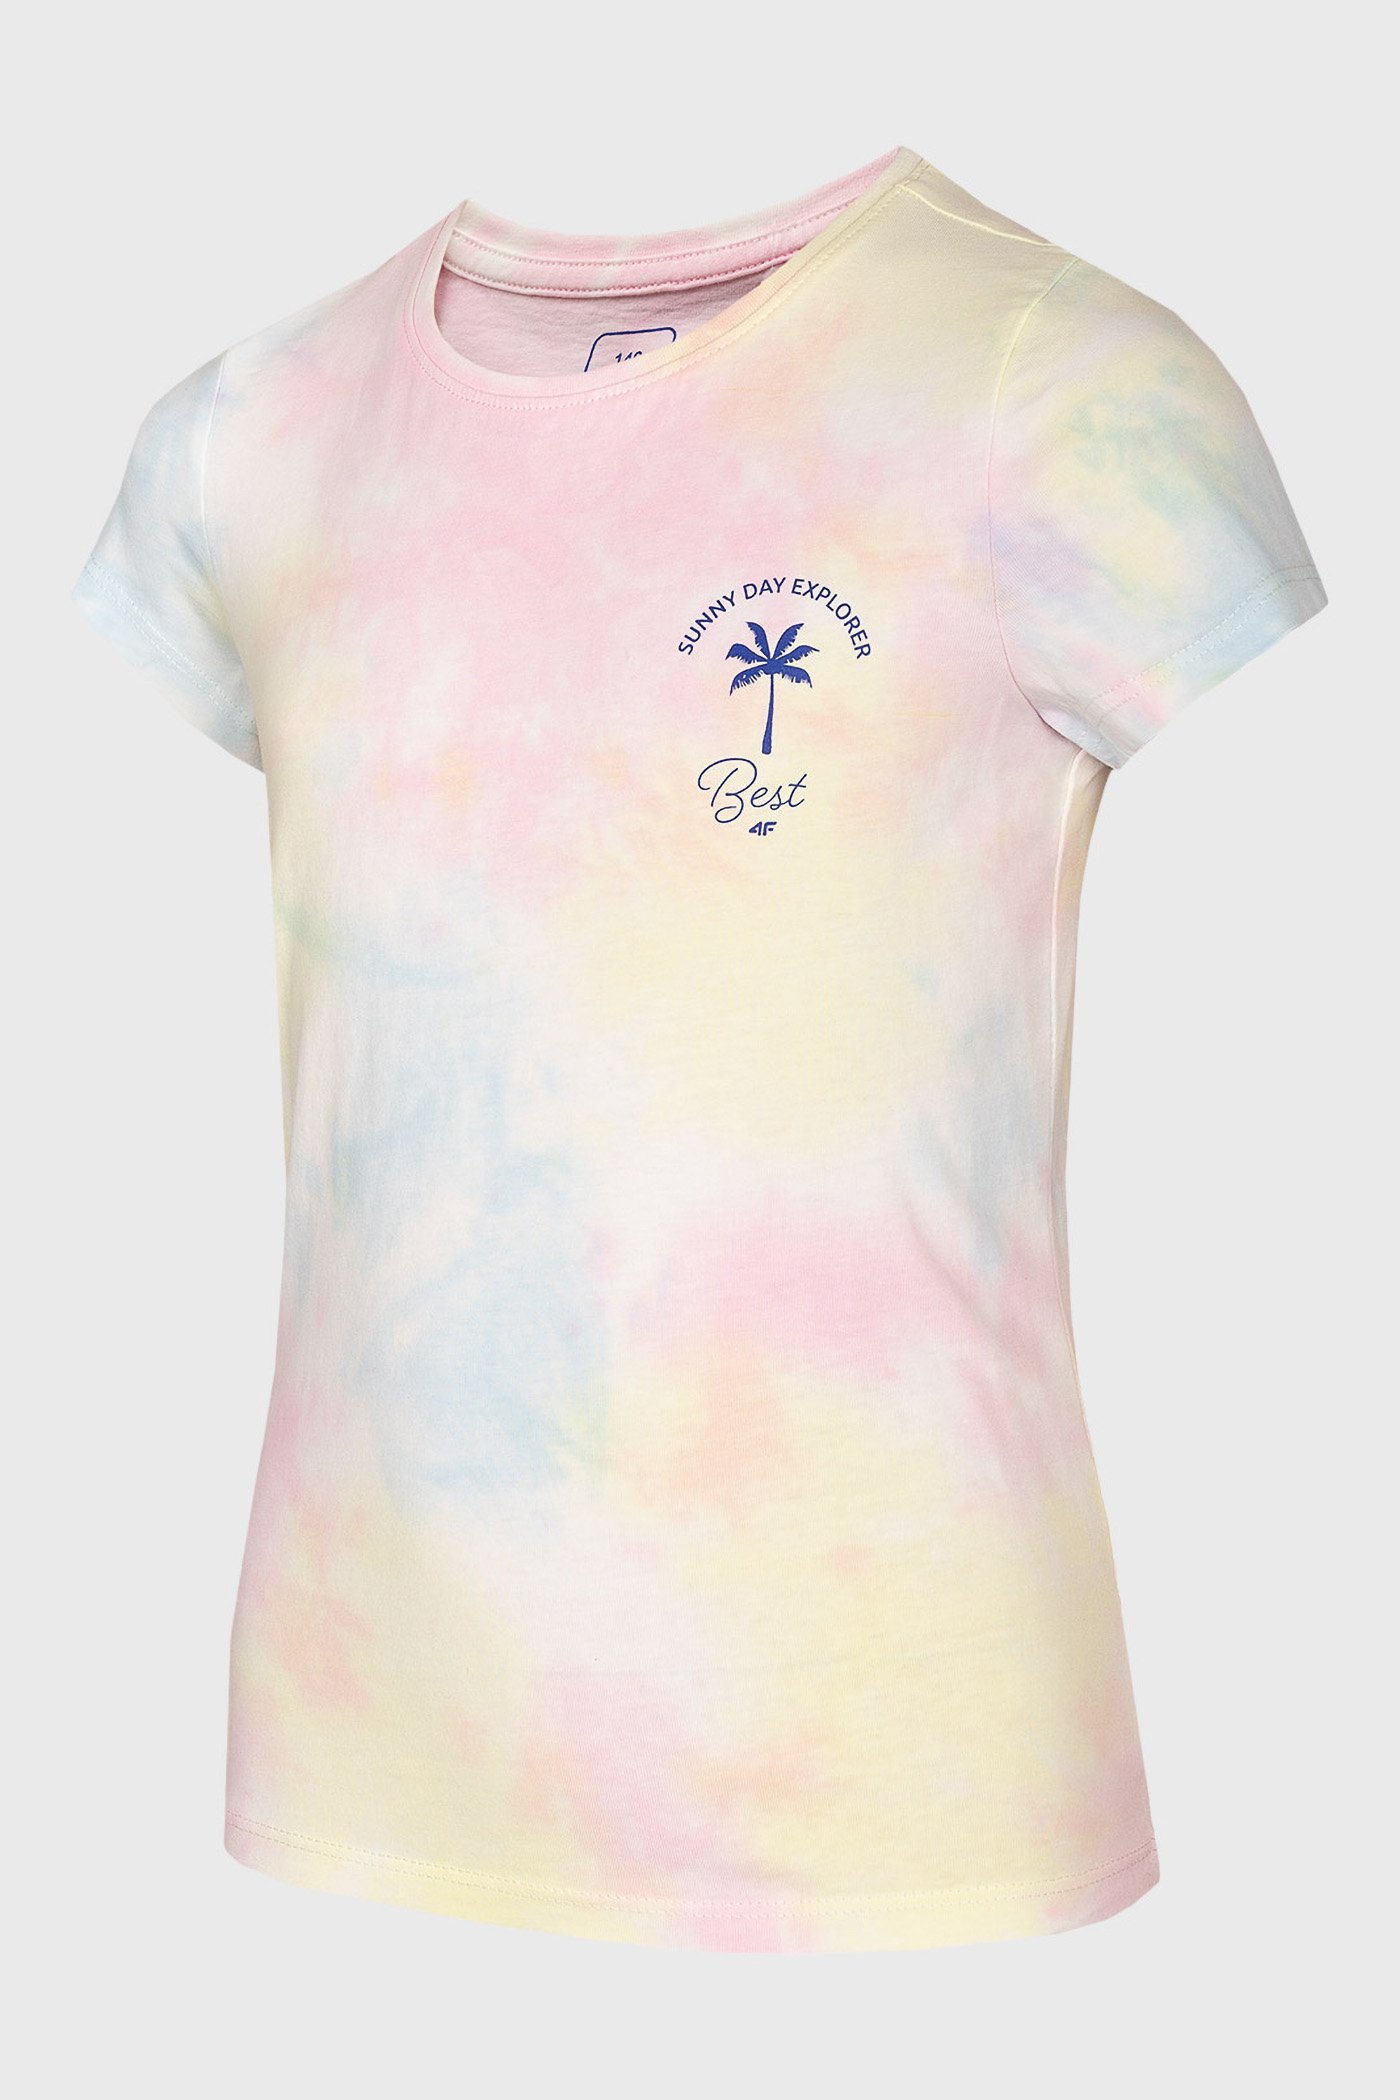 Μπλουζάκι για κορίτσια 4F Summer vibes | Astratex.gr